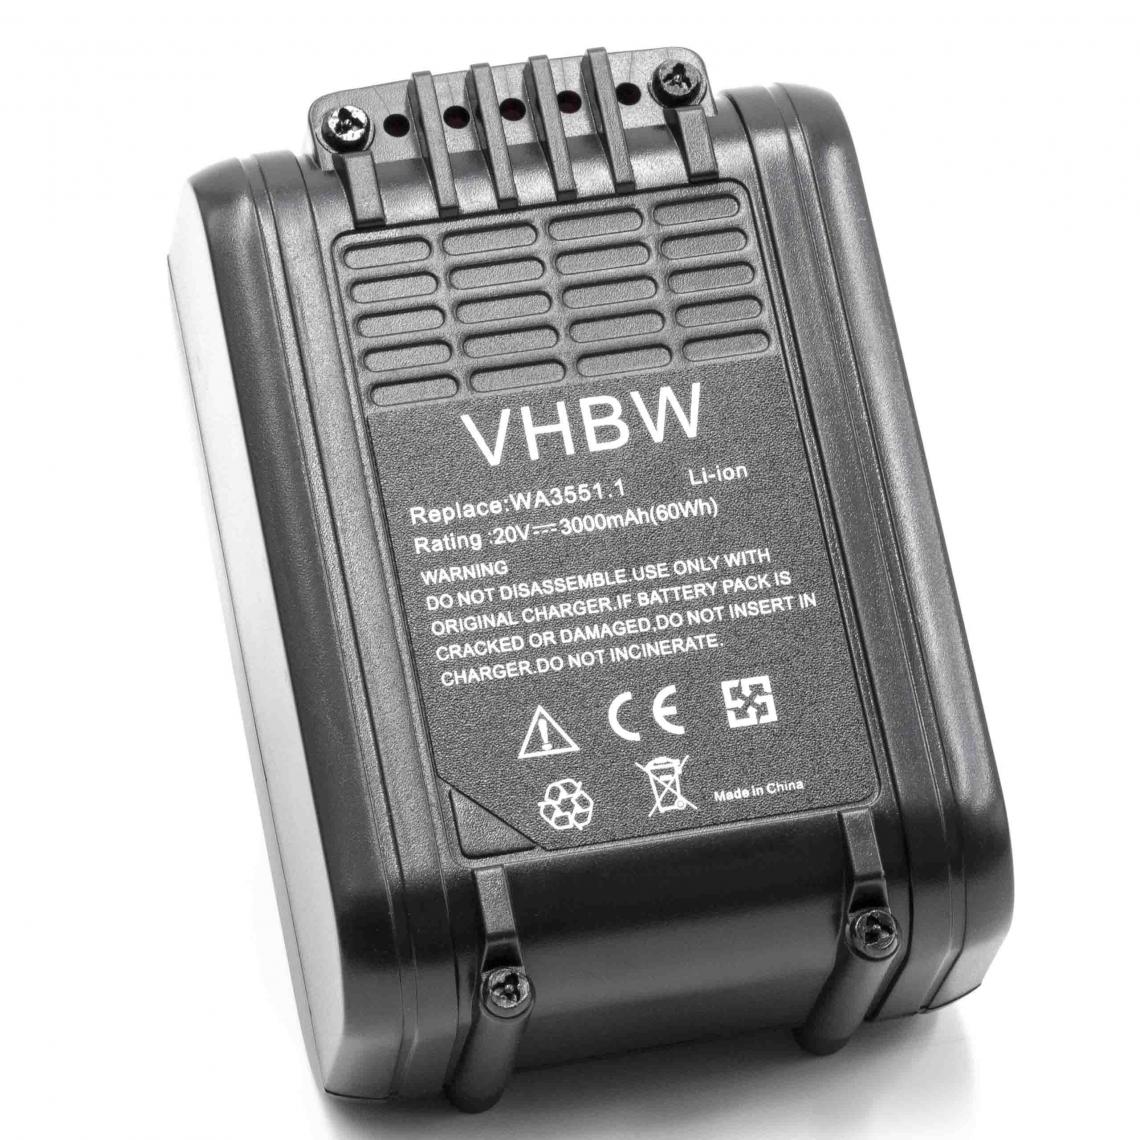 Vhbw - vhbw Batterie remplacement pour Worx WA3511, WA3512, WA3512.1, WA3516, WA3523, WA3549.1, WA3551 pour outil électrique (3000mAh Li-ion 20 V) - Clouterie